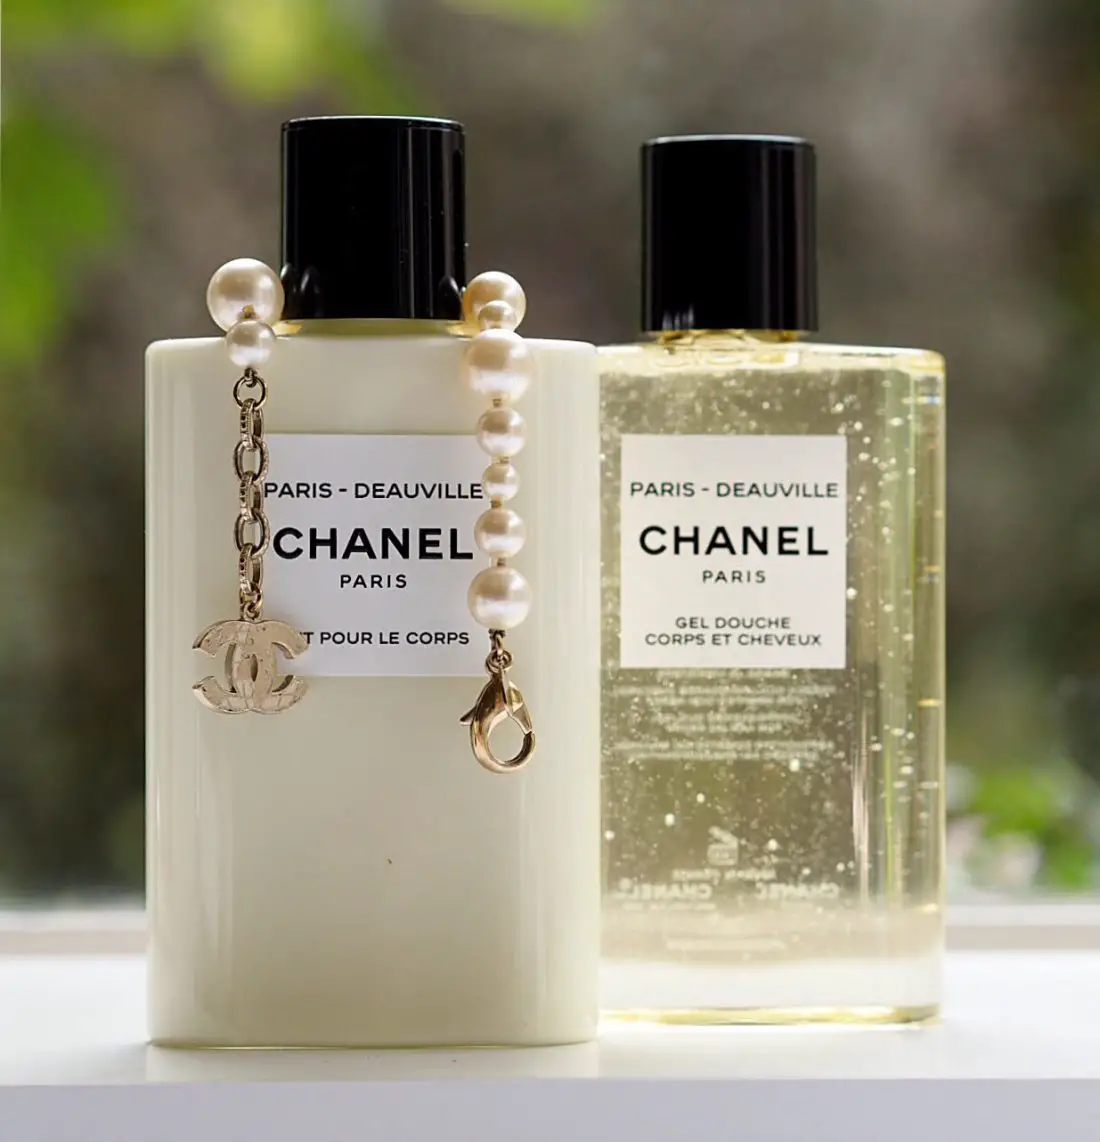 Chanel Les Eaux Toiletries | British Beauty Blogger